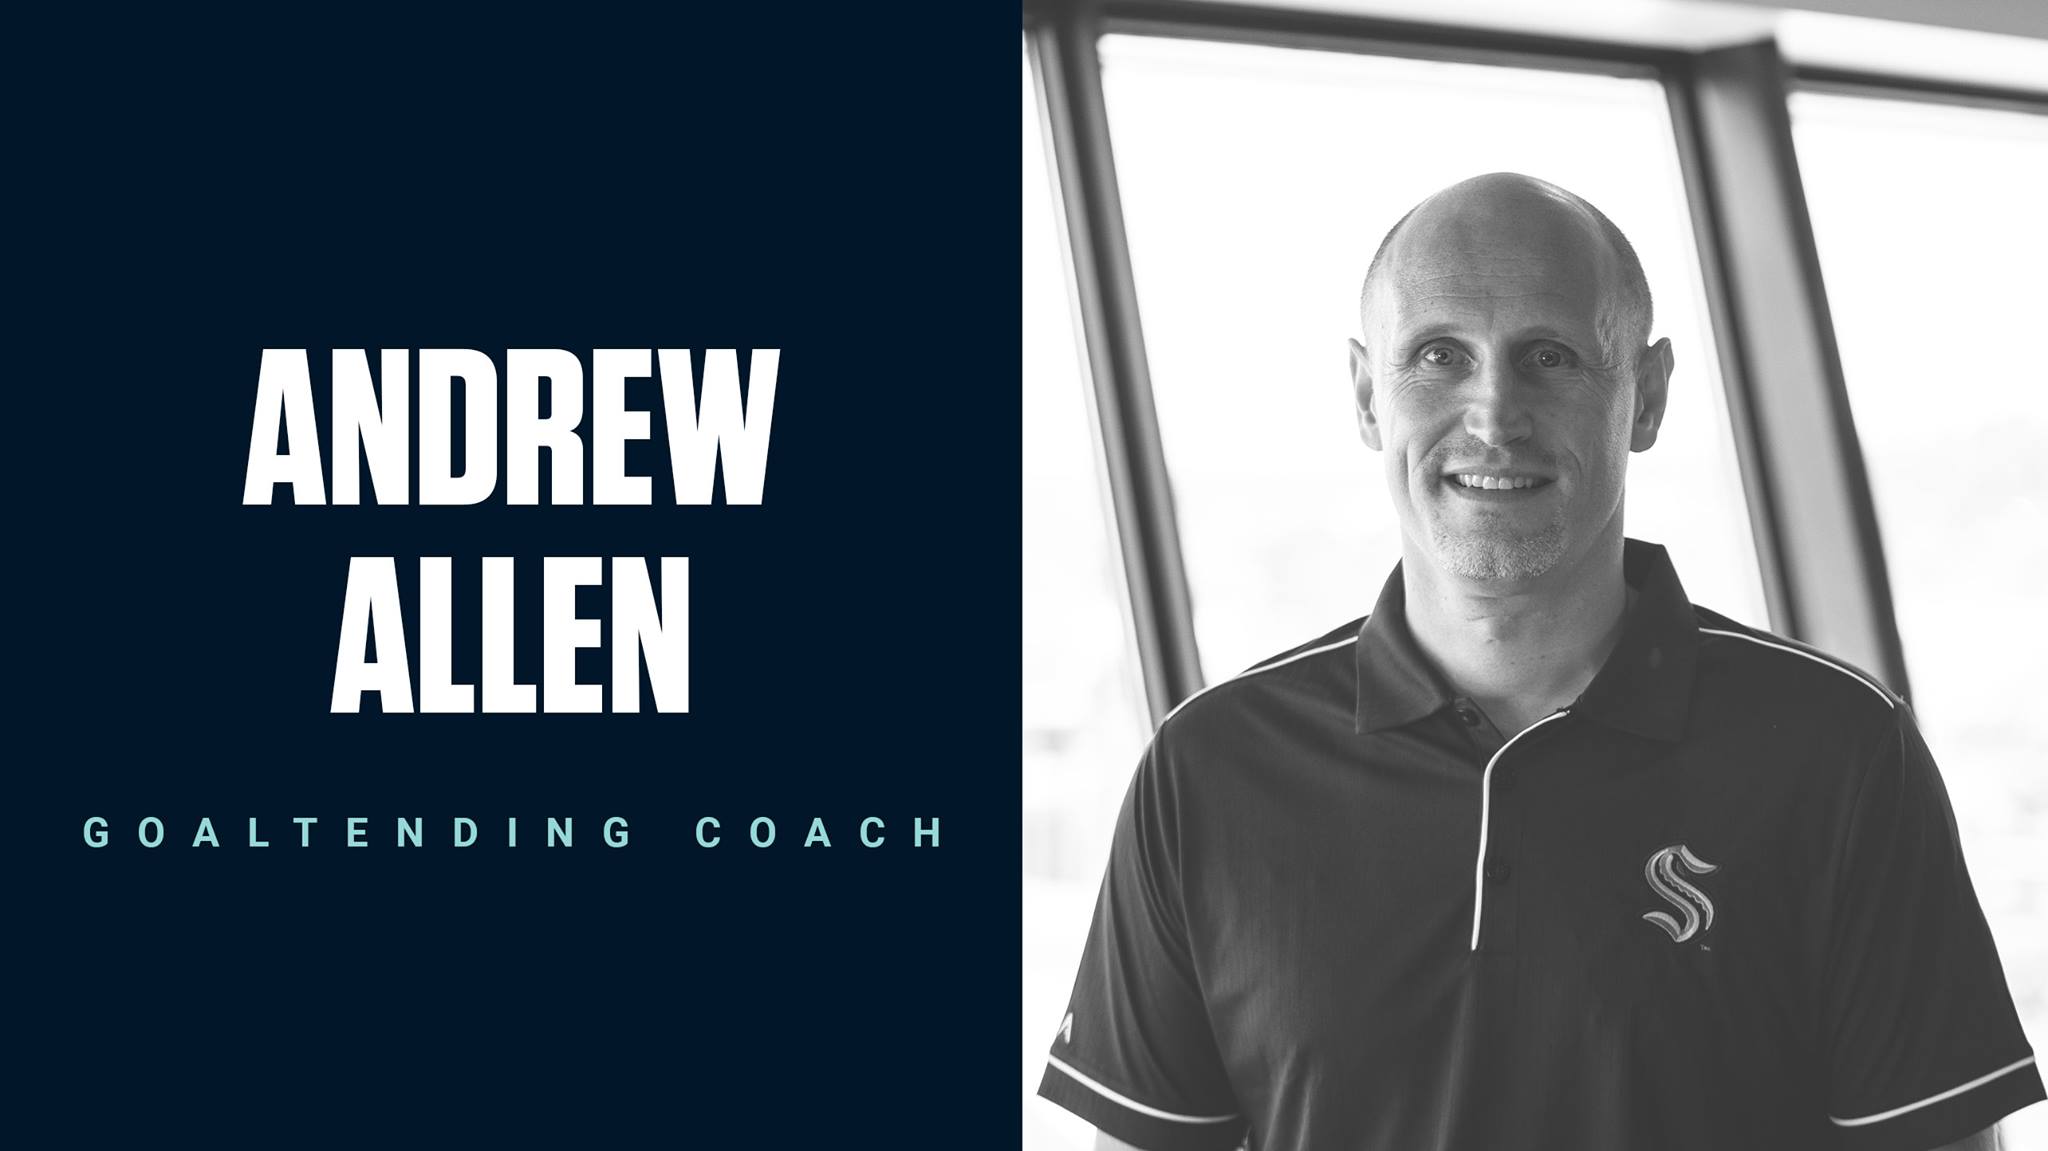 Andrew Allen named Goaltending Coach for NHL’s Seattle Kraken